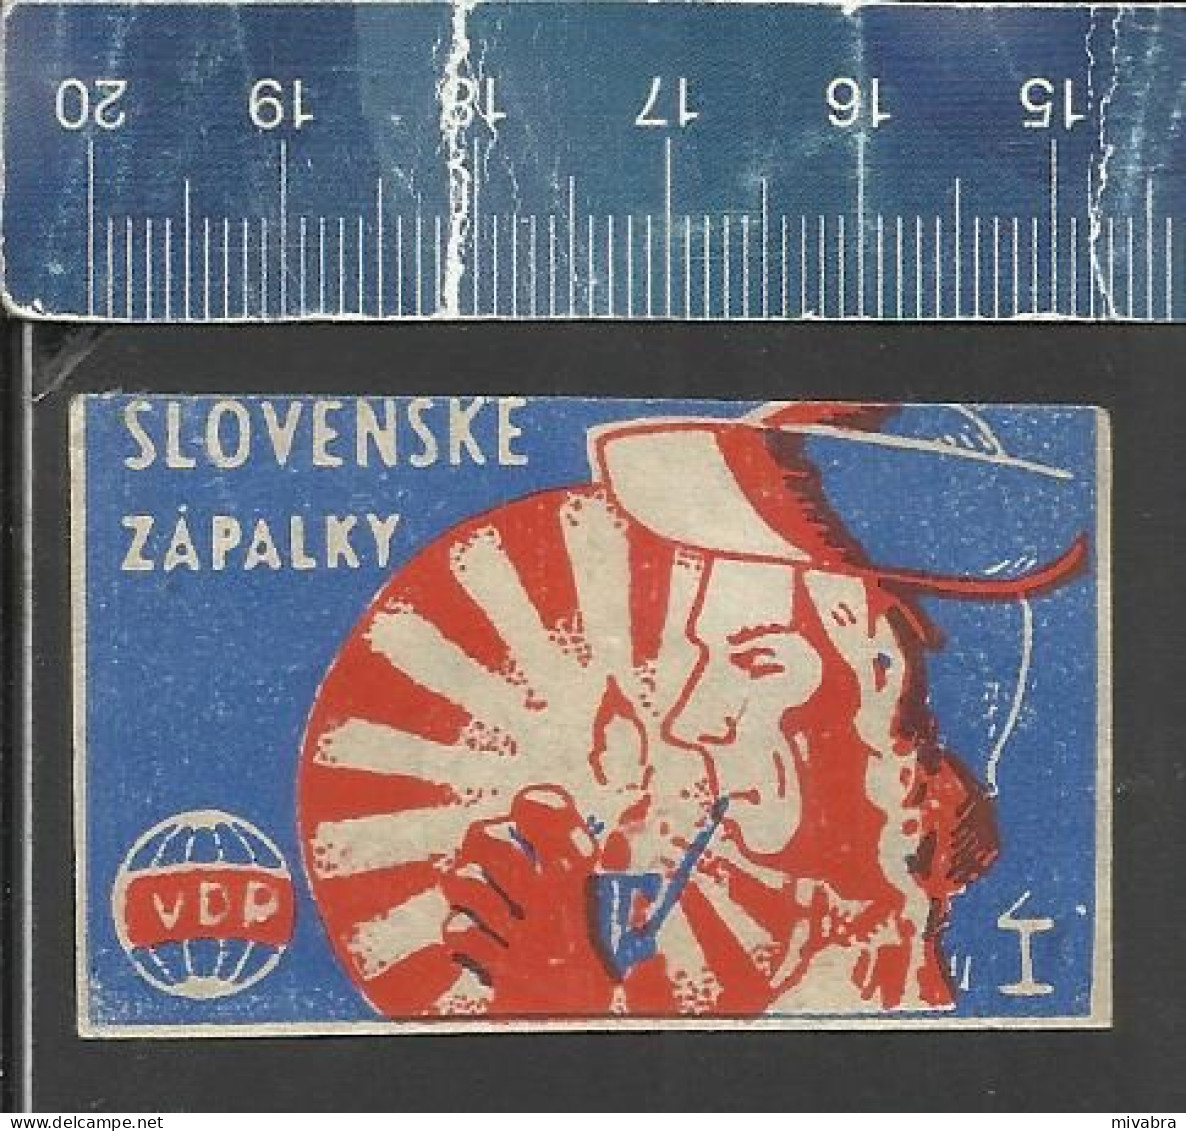 SLOVENSKE ZAPALKY VDP I ( MAN LICHTING A PIPE ) - OLD VINTAGE CZECHOSLOVAKIAN MATCHBOX LABEL - Zündholzschachteletiketten